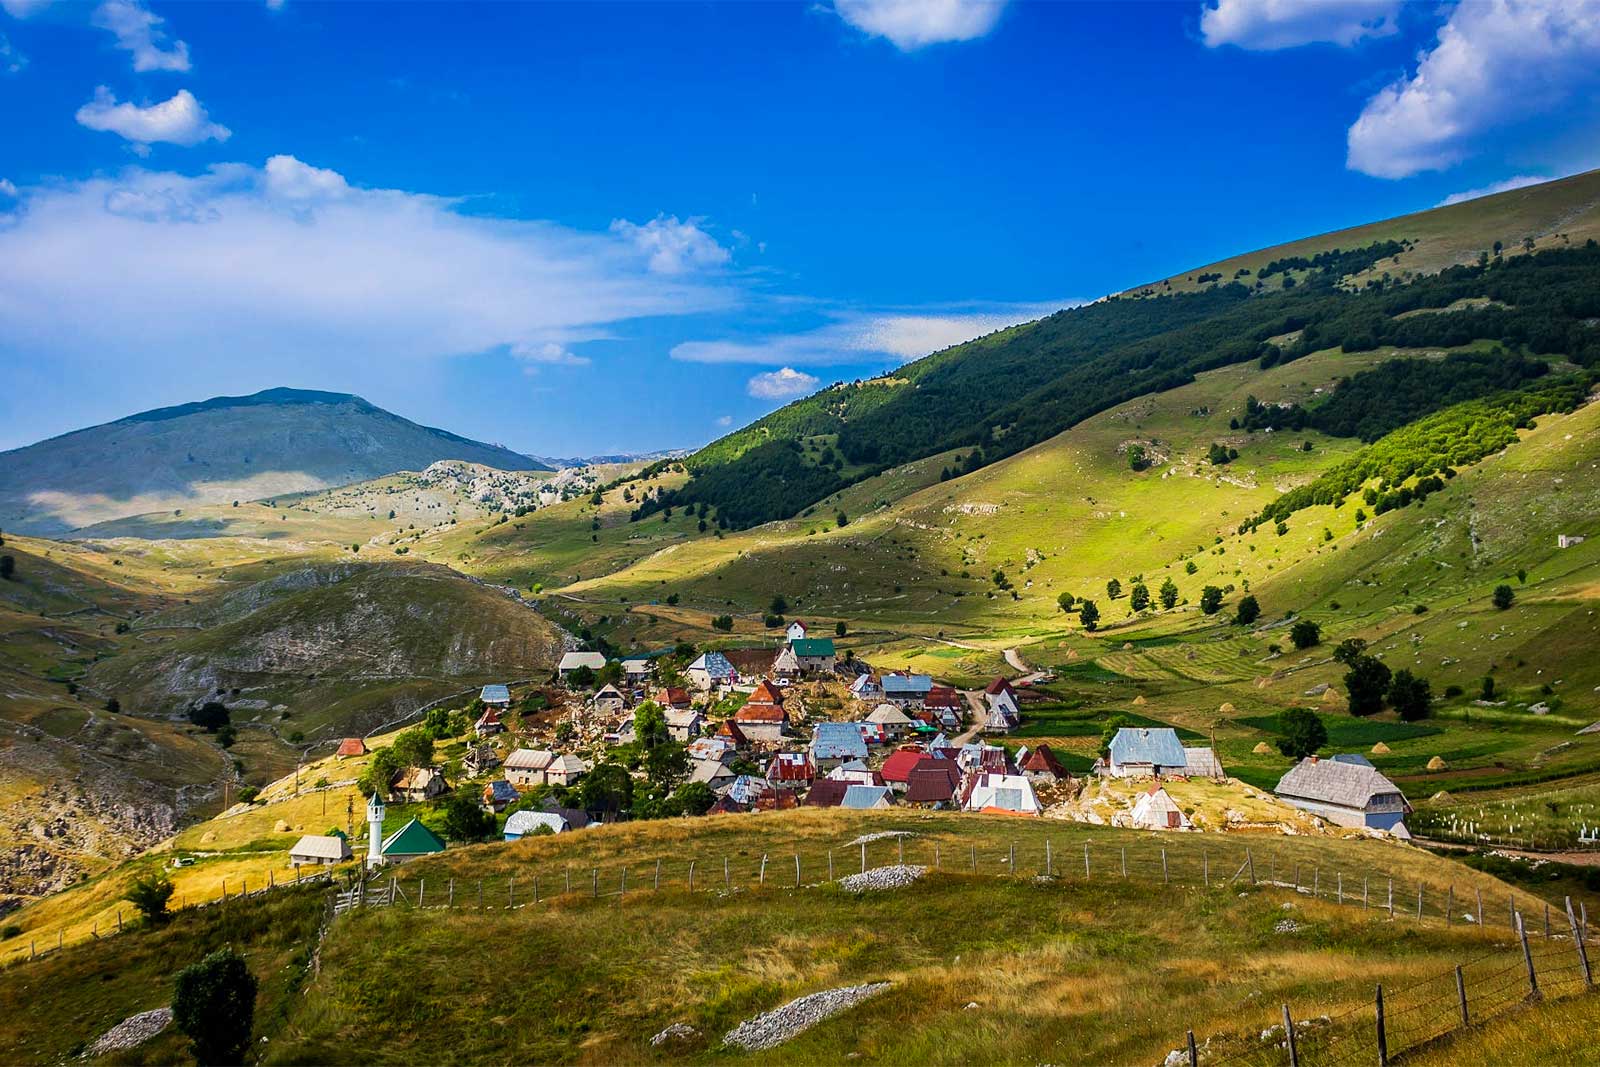 Lukomir Village at Bjelasnica Mountain